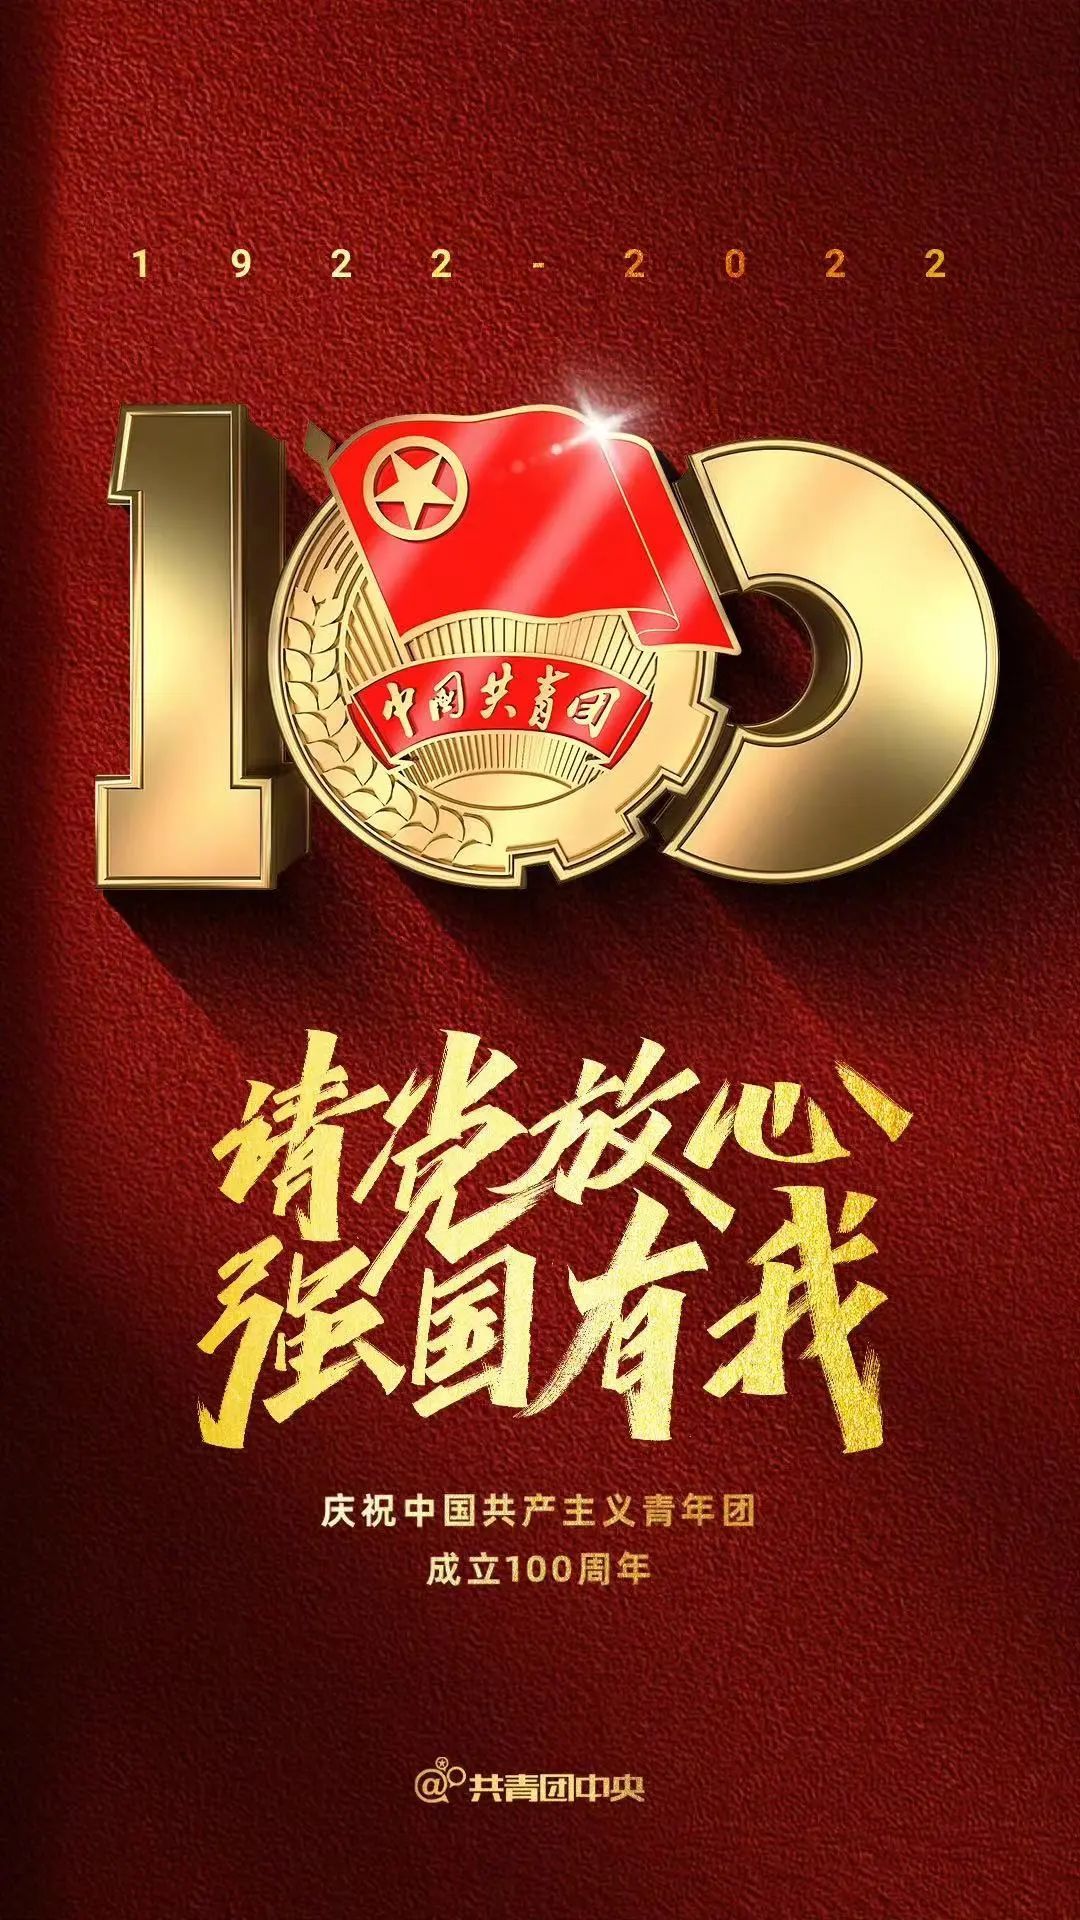 今日立夏,又到夏天啦;庆祝中国共青团成立100周,建团百年;立夏要称